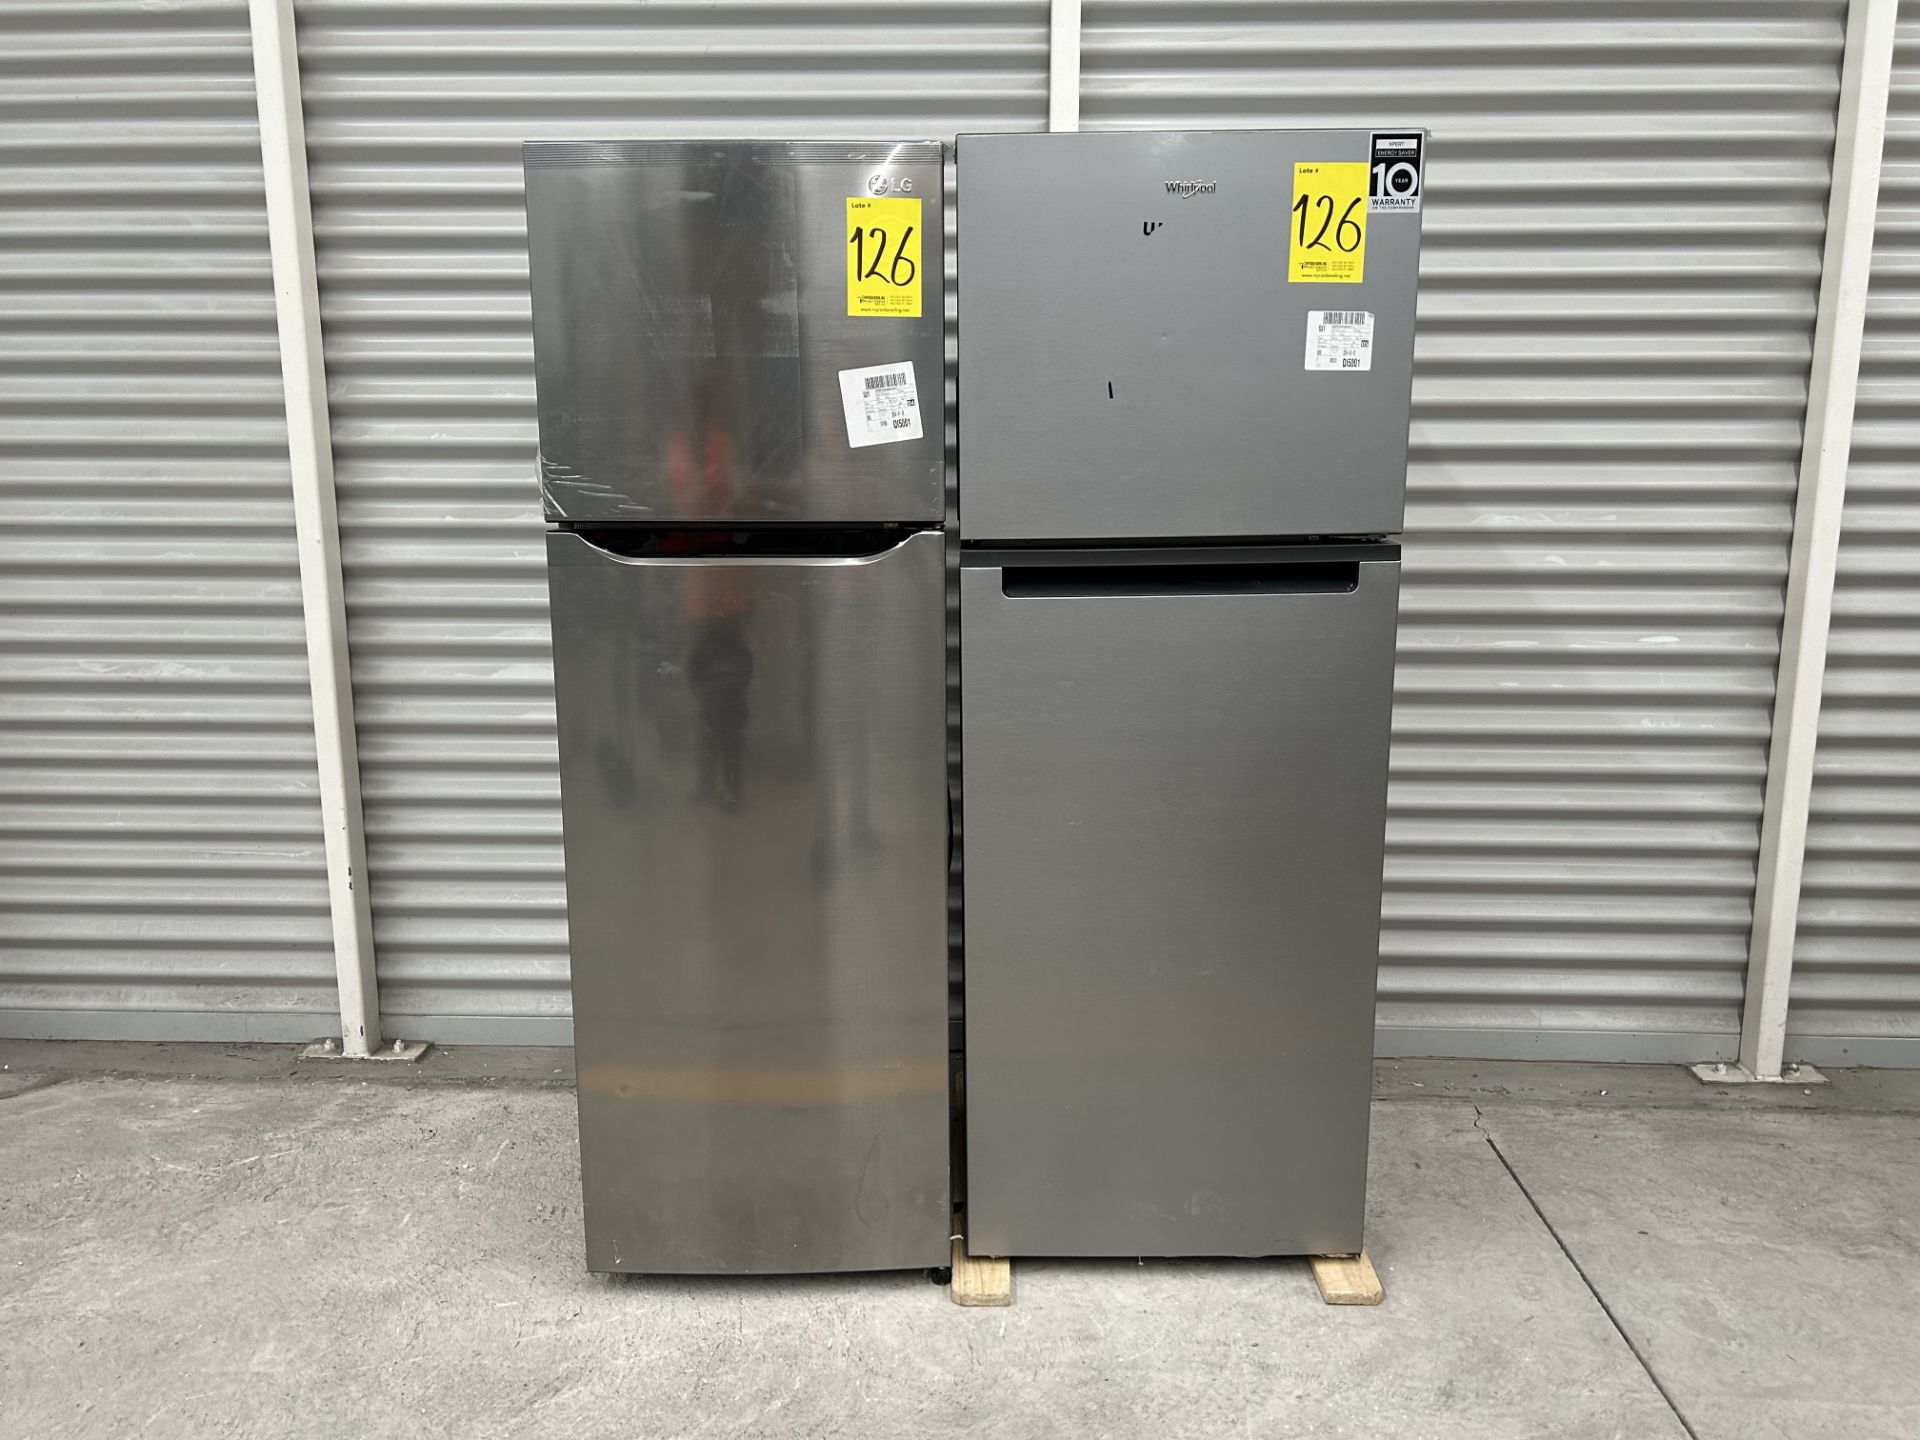 Lote de 2 refrigeradores contiene: 1 Refrigerador Marca LG, Modelo GT29BPPK, Serie 41191, Color GRI